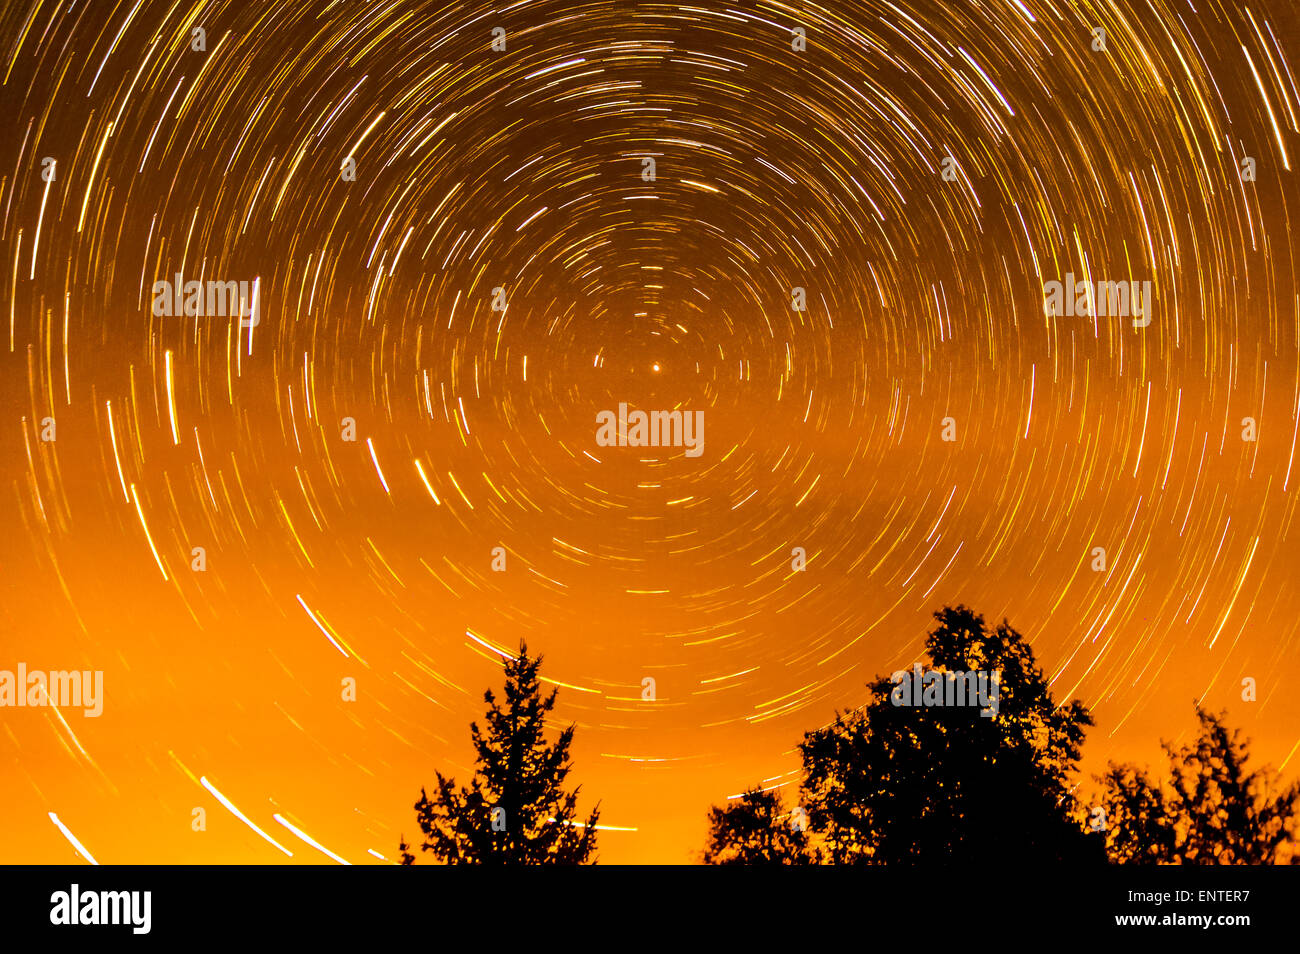 Un sentiero a stella dell'immagine che mostra il movimento delle stelle come la terra si muove intorno al suo asse nel cielo notturno, Scotland, Regno Unito Foto Stock